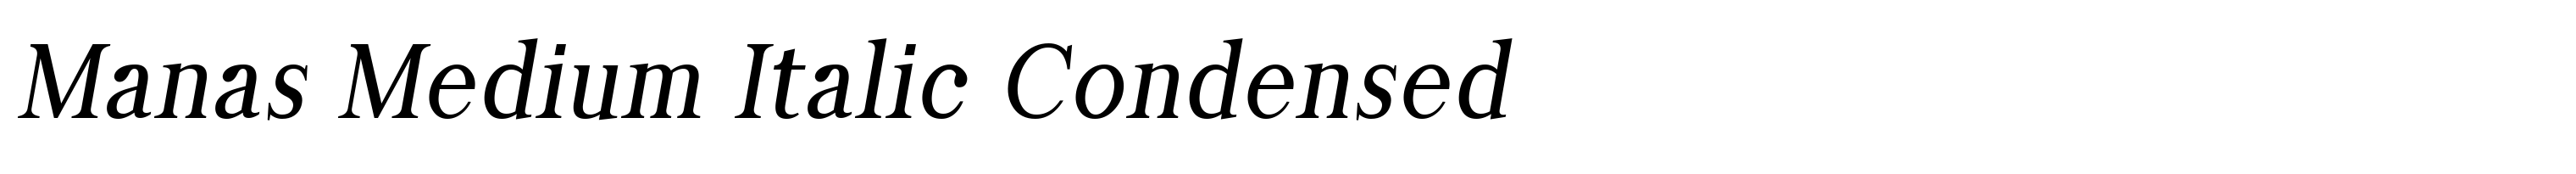 Manas Medium Italic Condensed